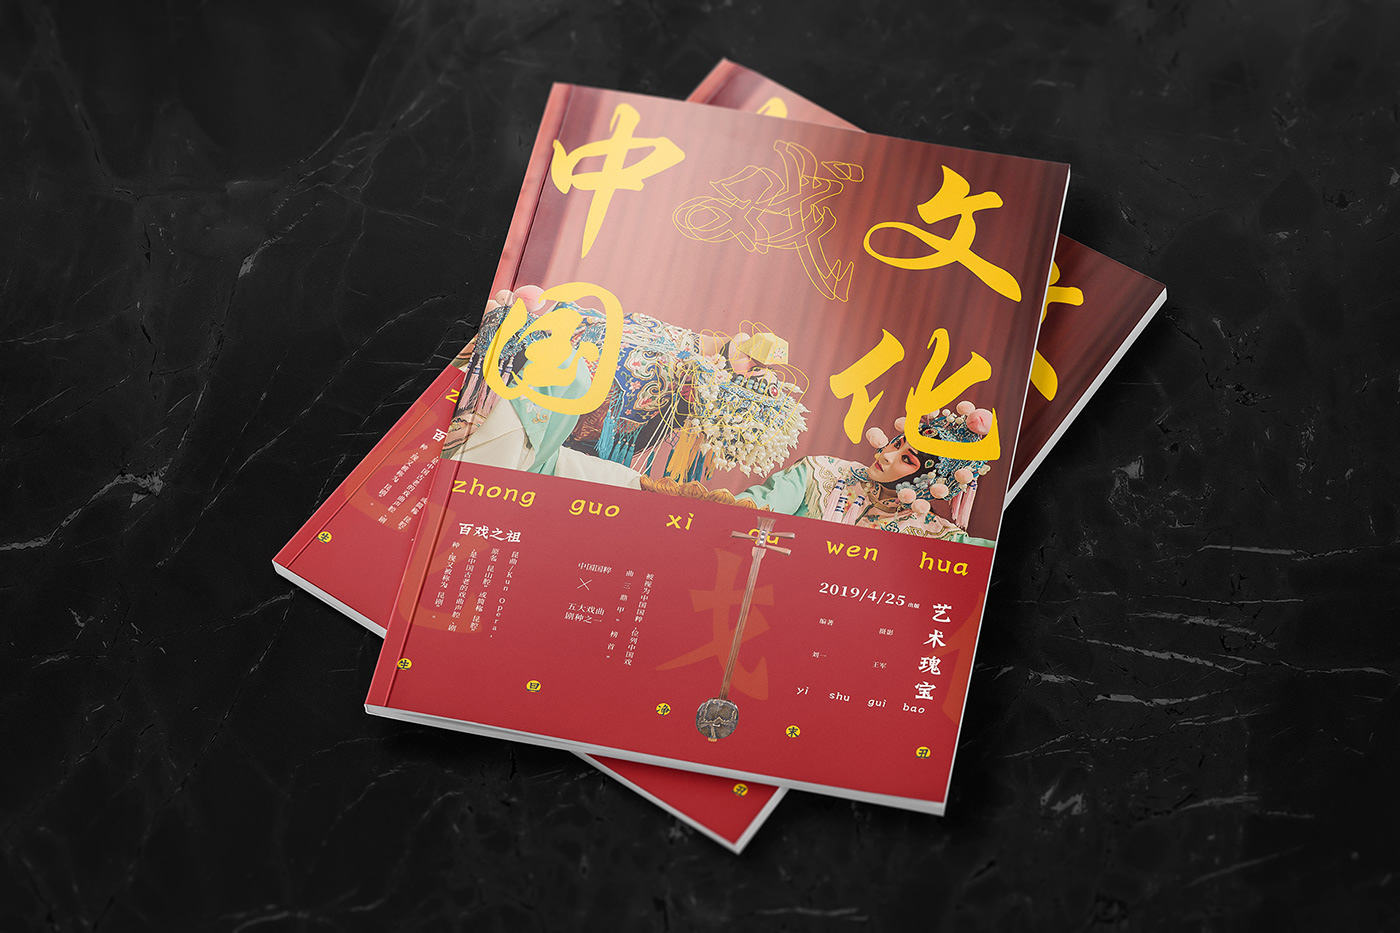 中国文化 中国风   企业画册 宣传册设计 文创画册 文艺画册 极简画册 版式设计 设计排版 非遗